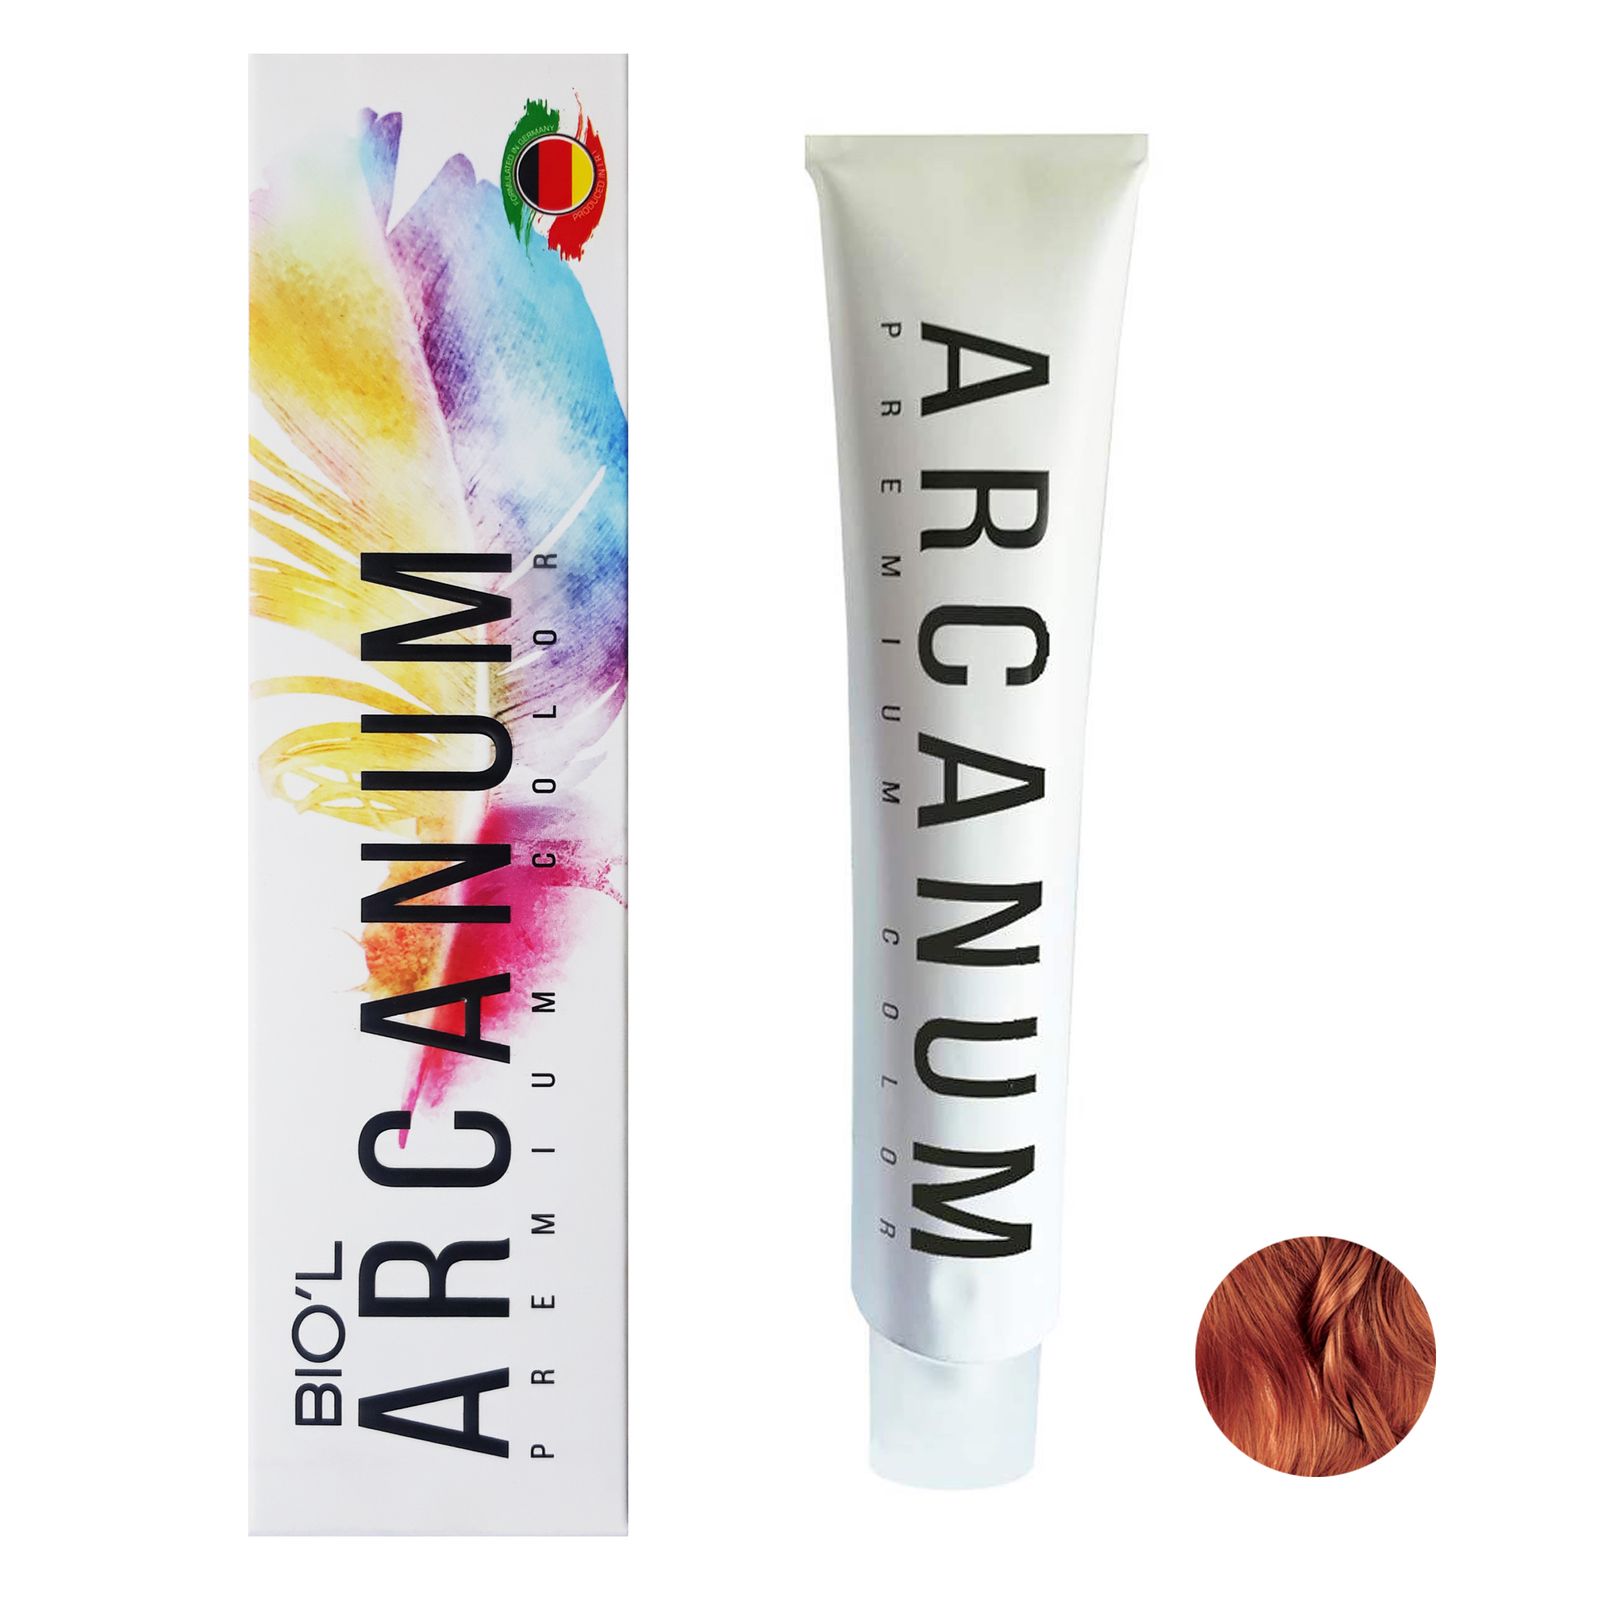  رنگ مو بیول مدل Arcanum شماره 7.15 حجم 120 میلی لیتر رنگ بلوند تنباکویی متوسط -  - 1